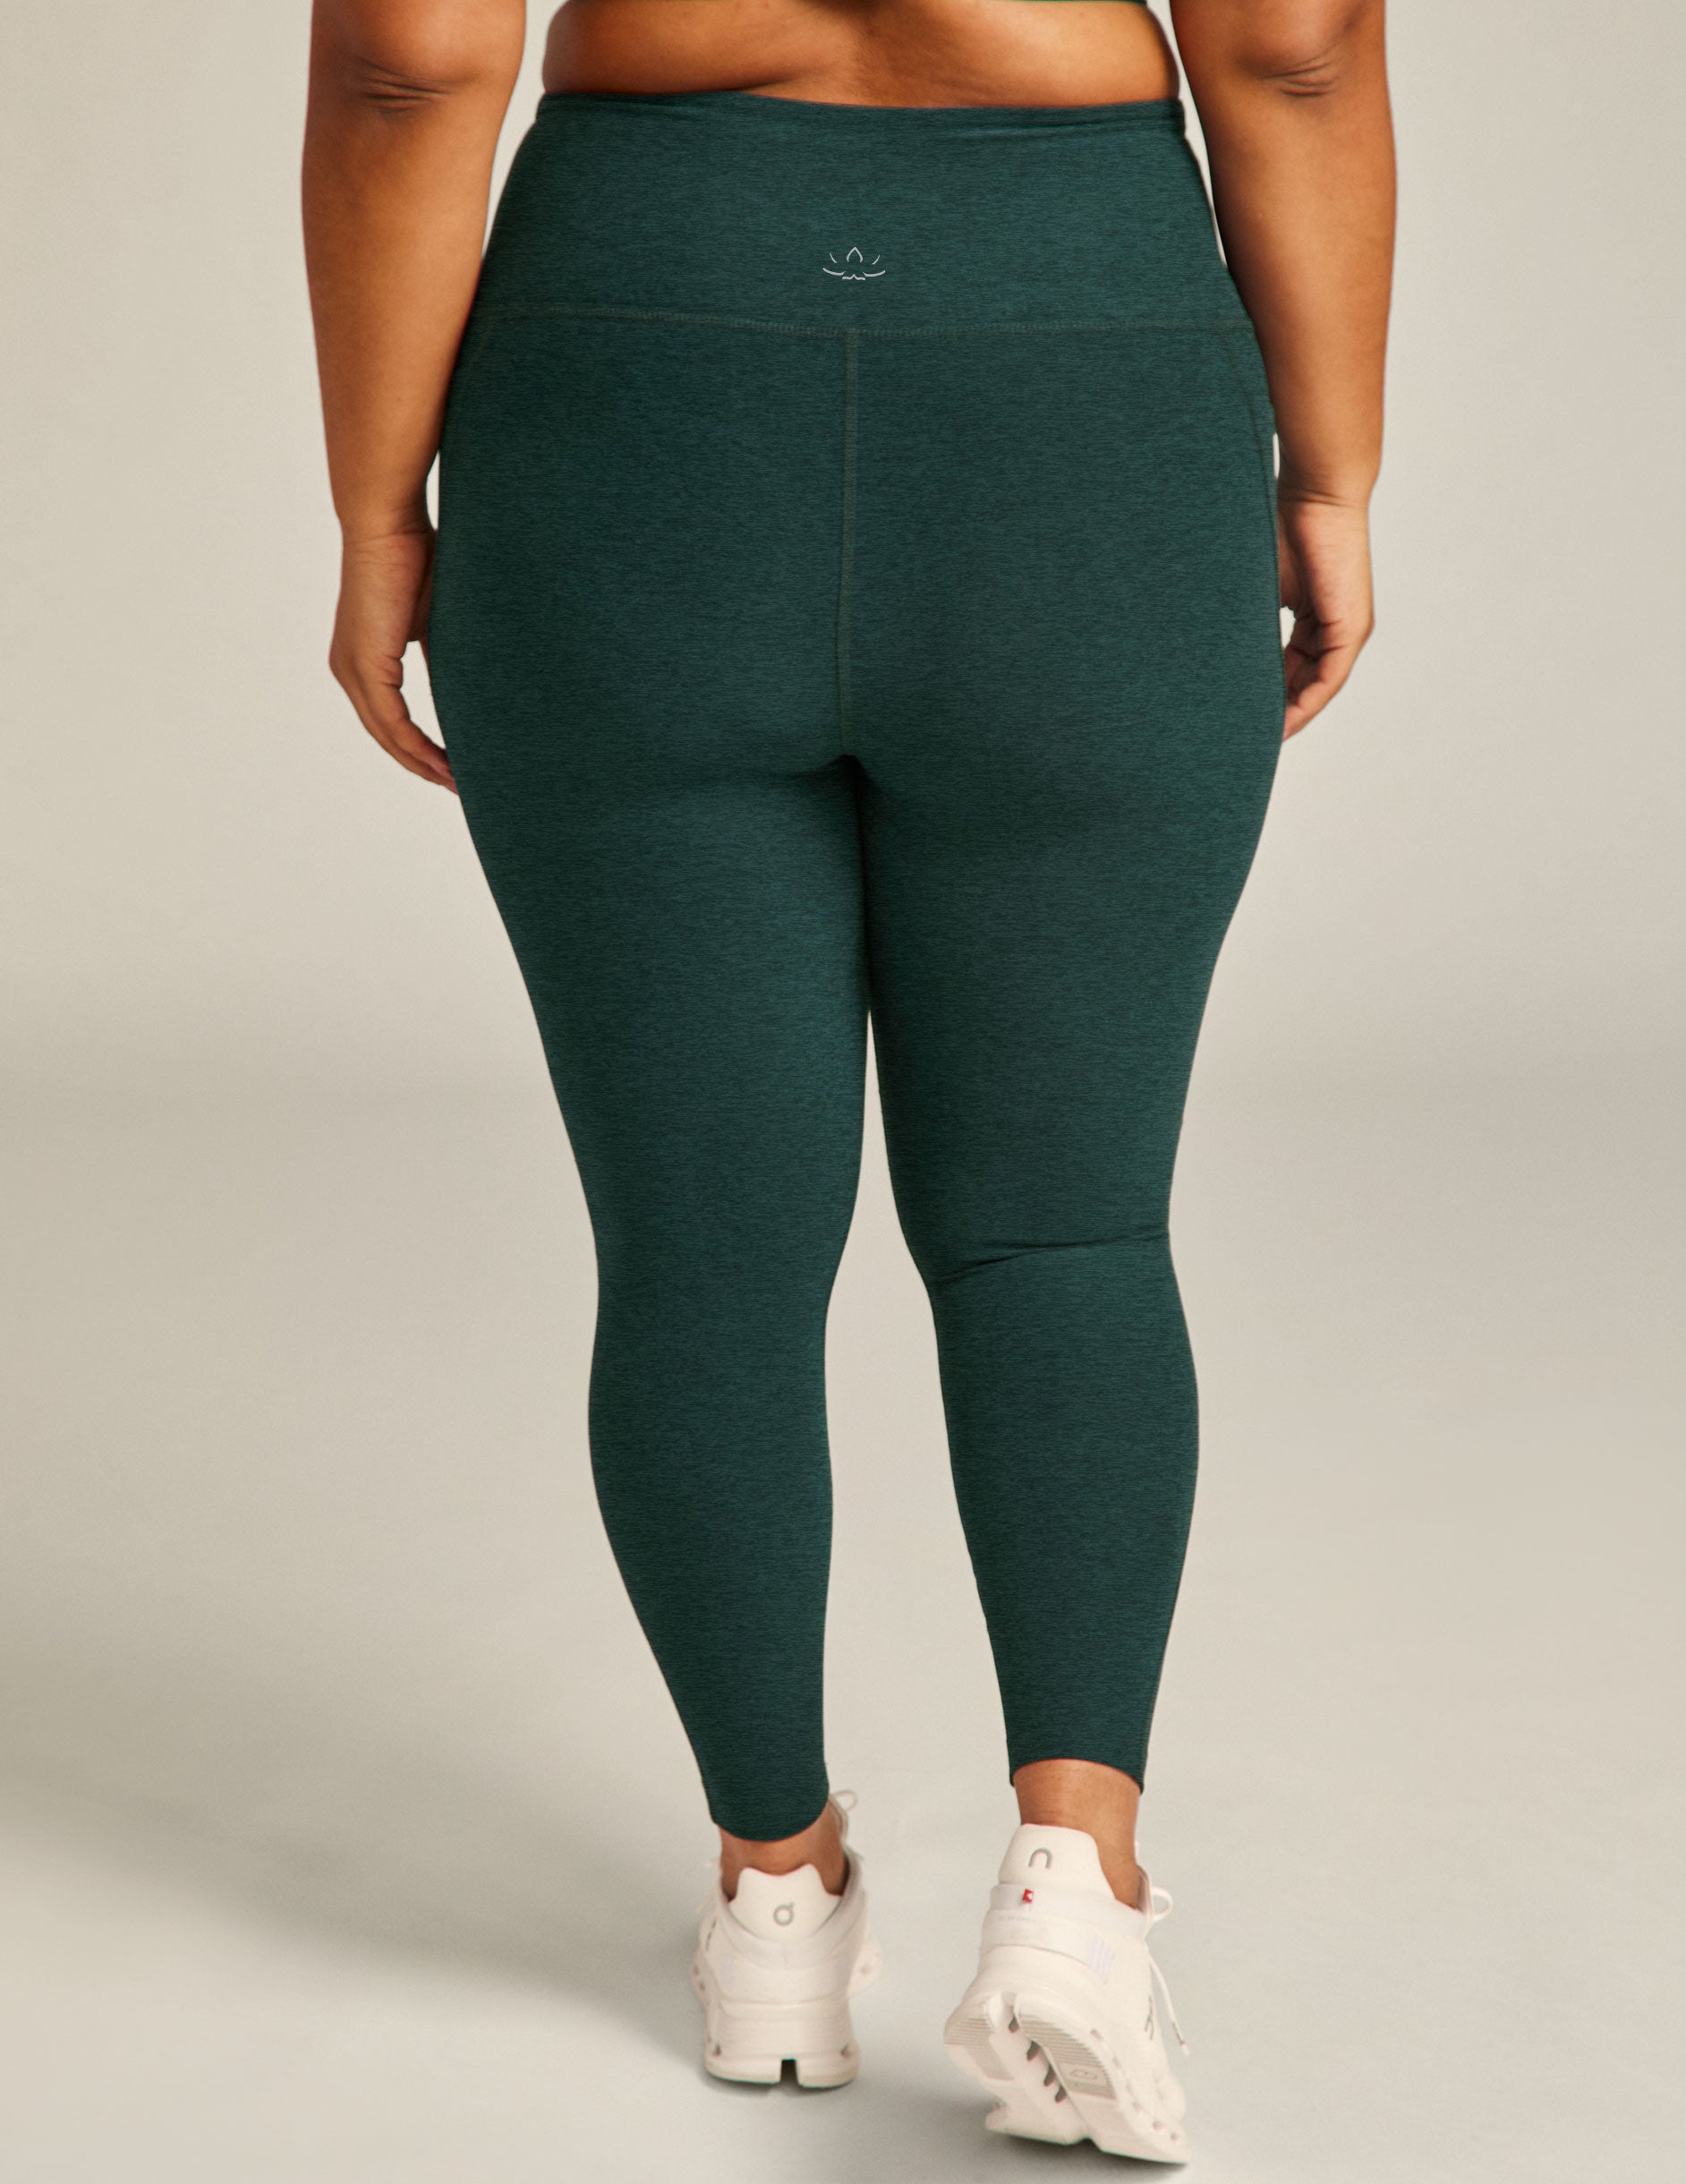 Women’s Olive Green 23” Inseams Lululemon leggings Size 4 Read Description